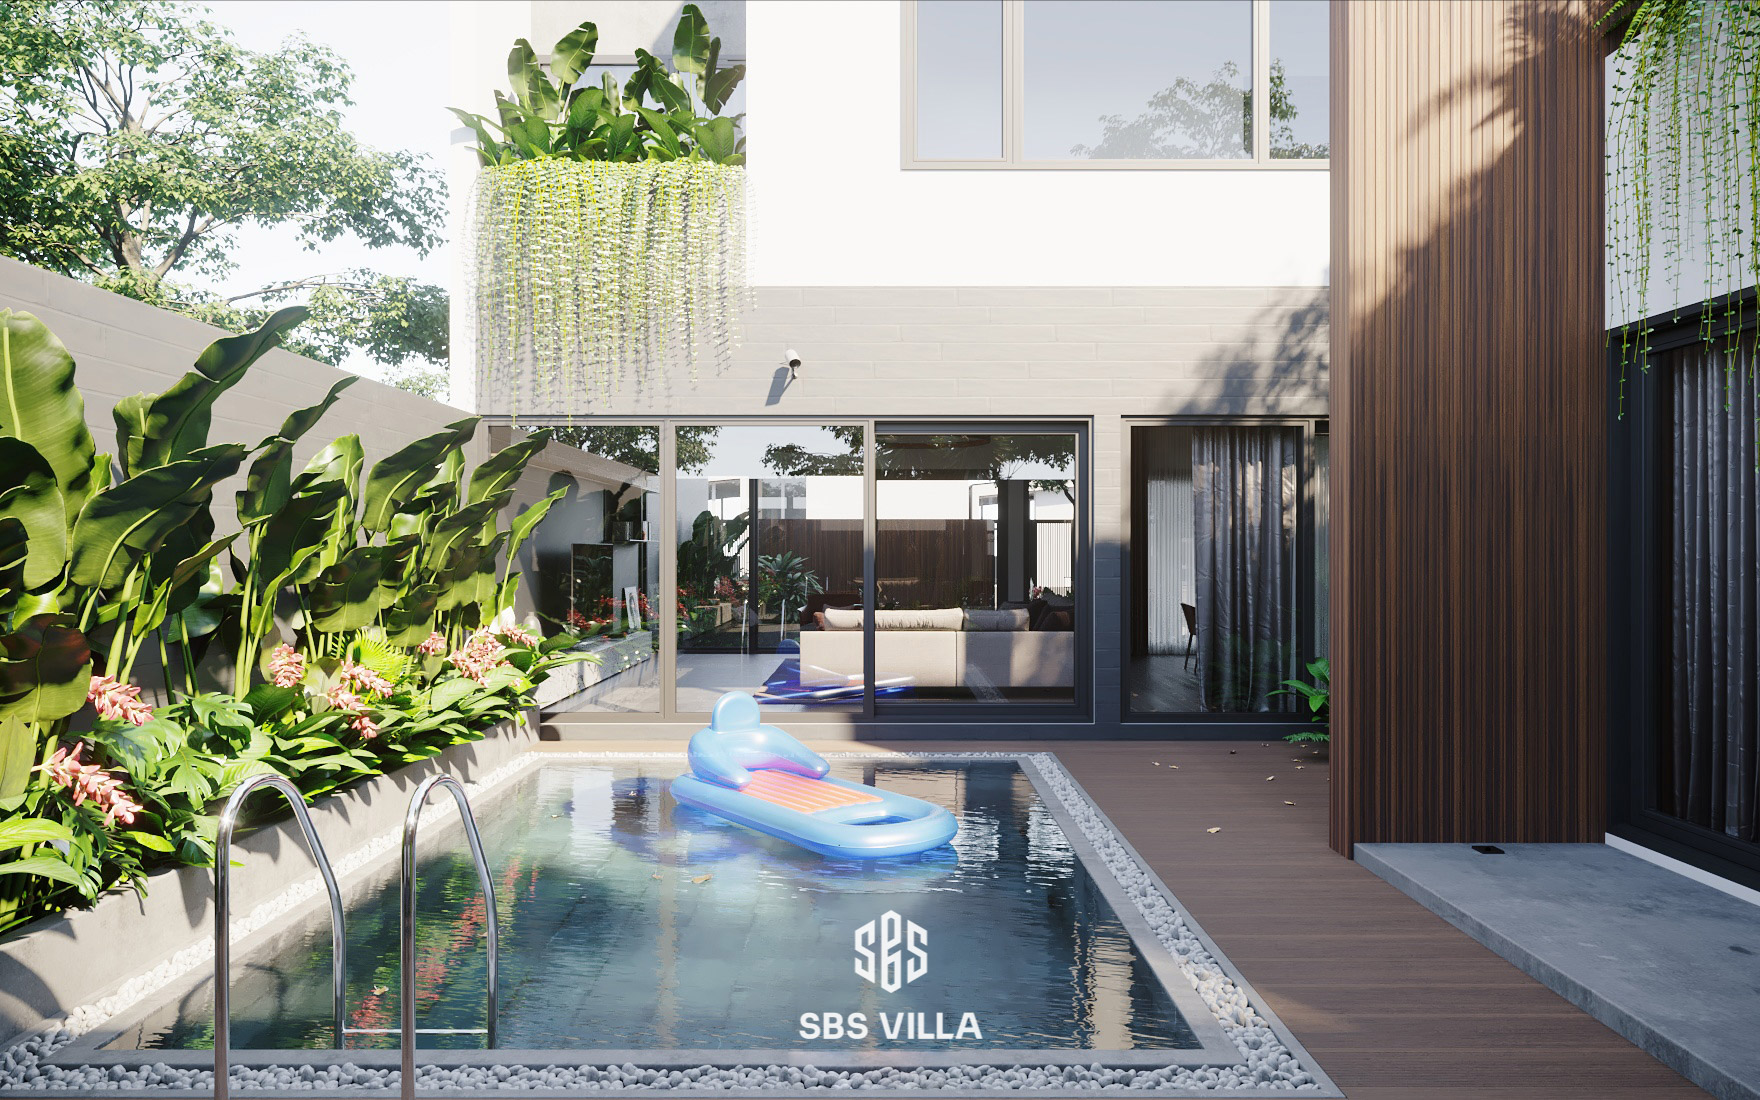 Thiết kế bể bơi tích hợp giữa lòng biệt thự nhà vườn 2 tầng